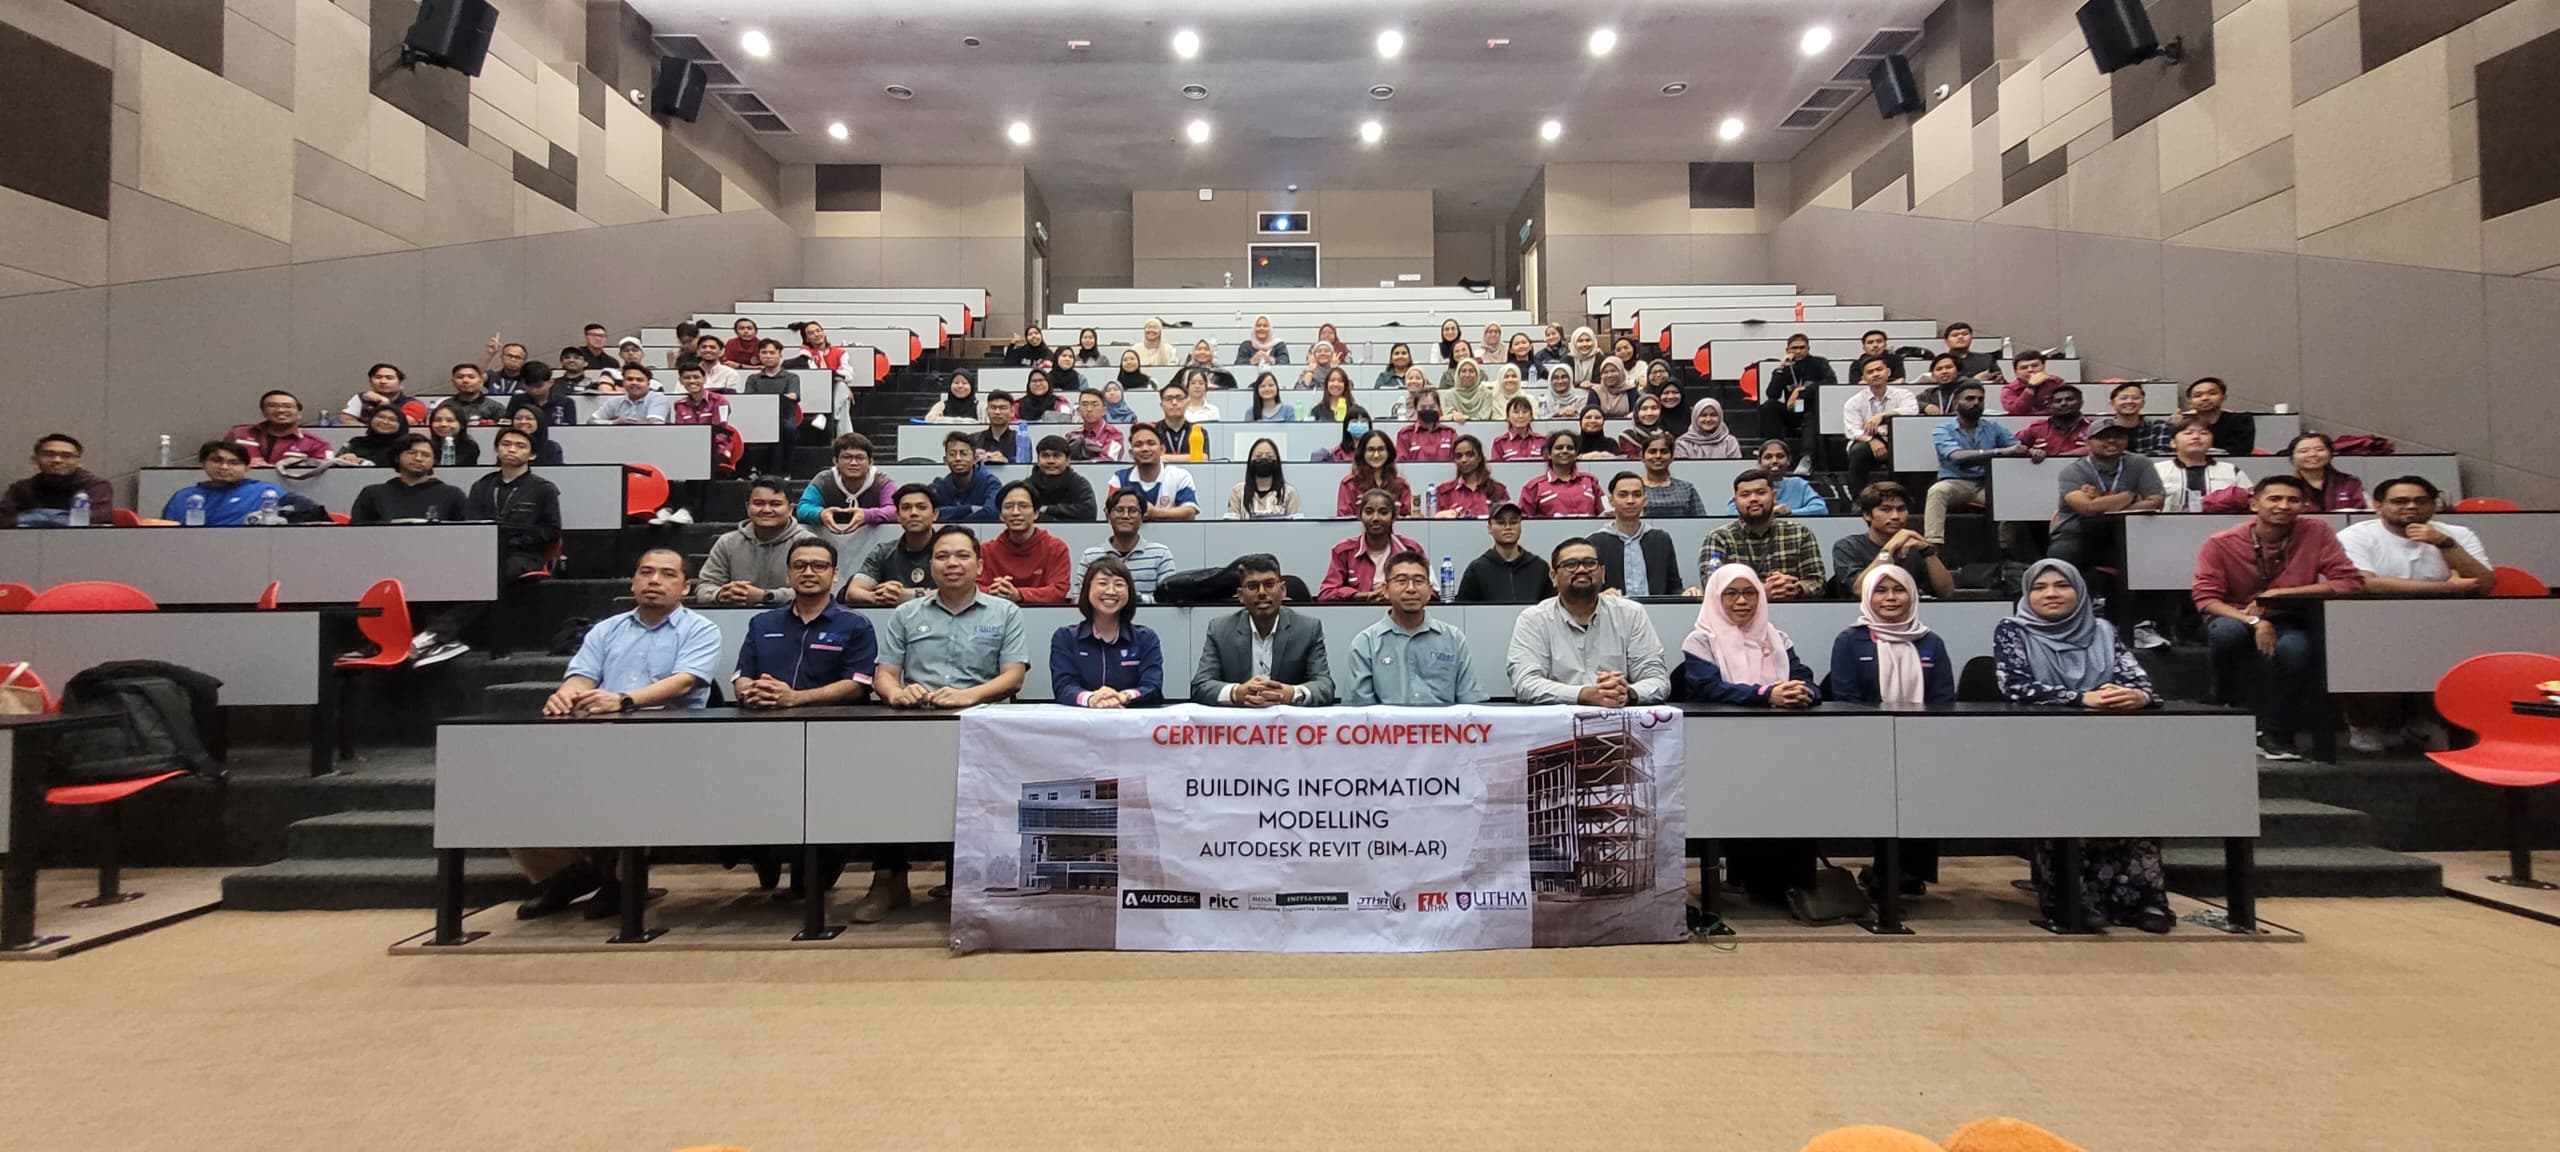 98 pelajar Fakulti Teknologi Kejuruteraan, UTHM berjaya peroleh Sijil Kompetensi BIM-AR